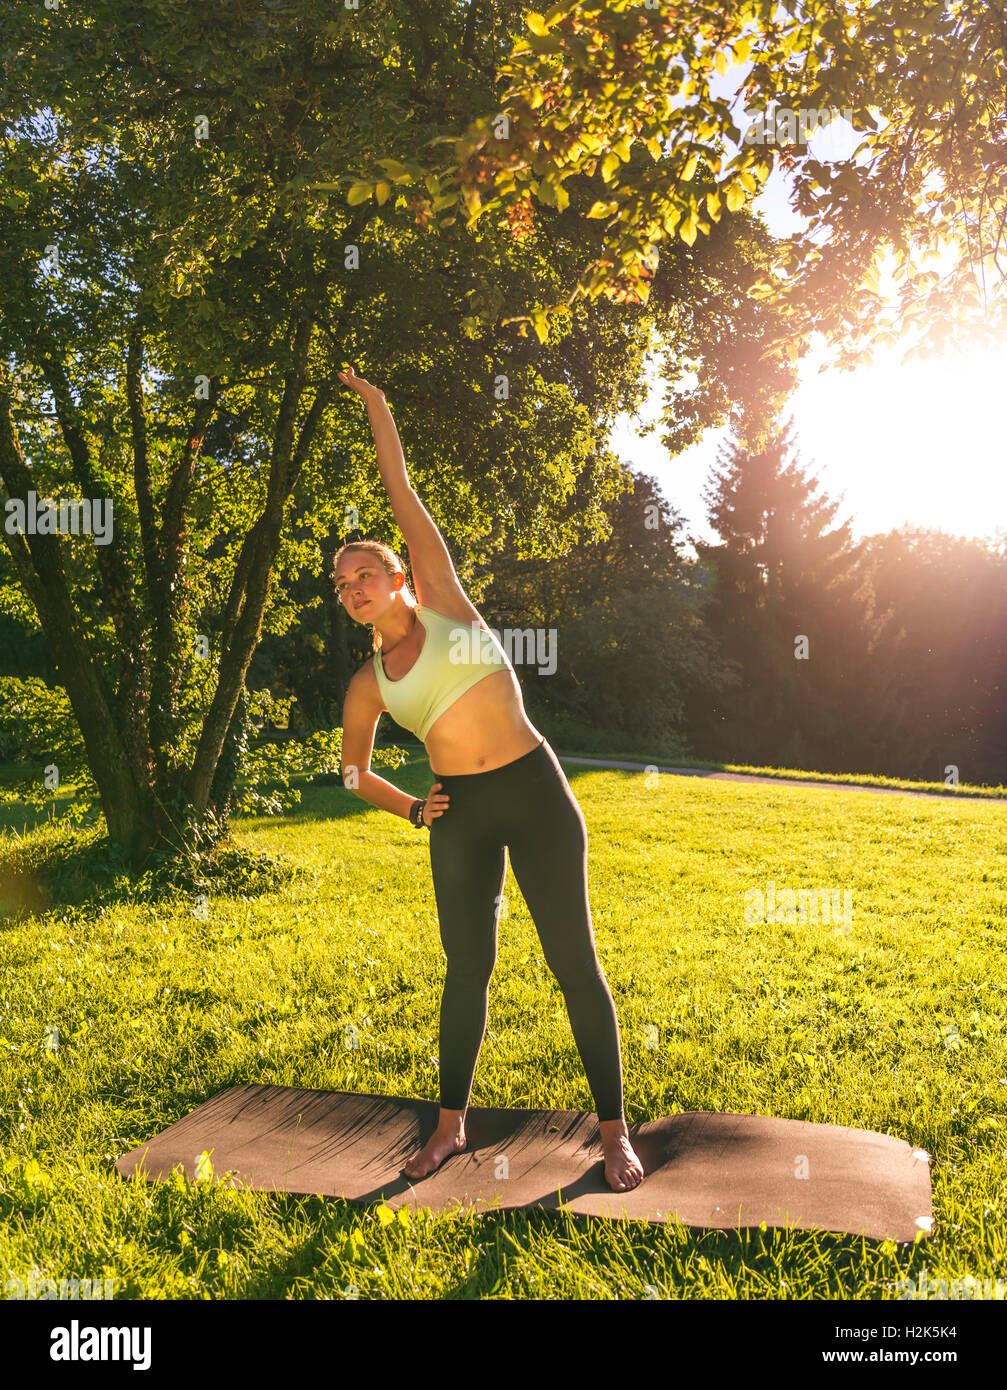 Warmup ausüben, junge Frau in Sportkleidung dabei Training auf Matte im  Park, München, Upper Bavaria, Bavaria, Germany Stockfotografie - Alamy